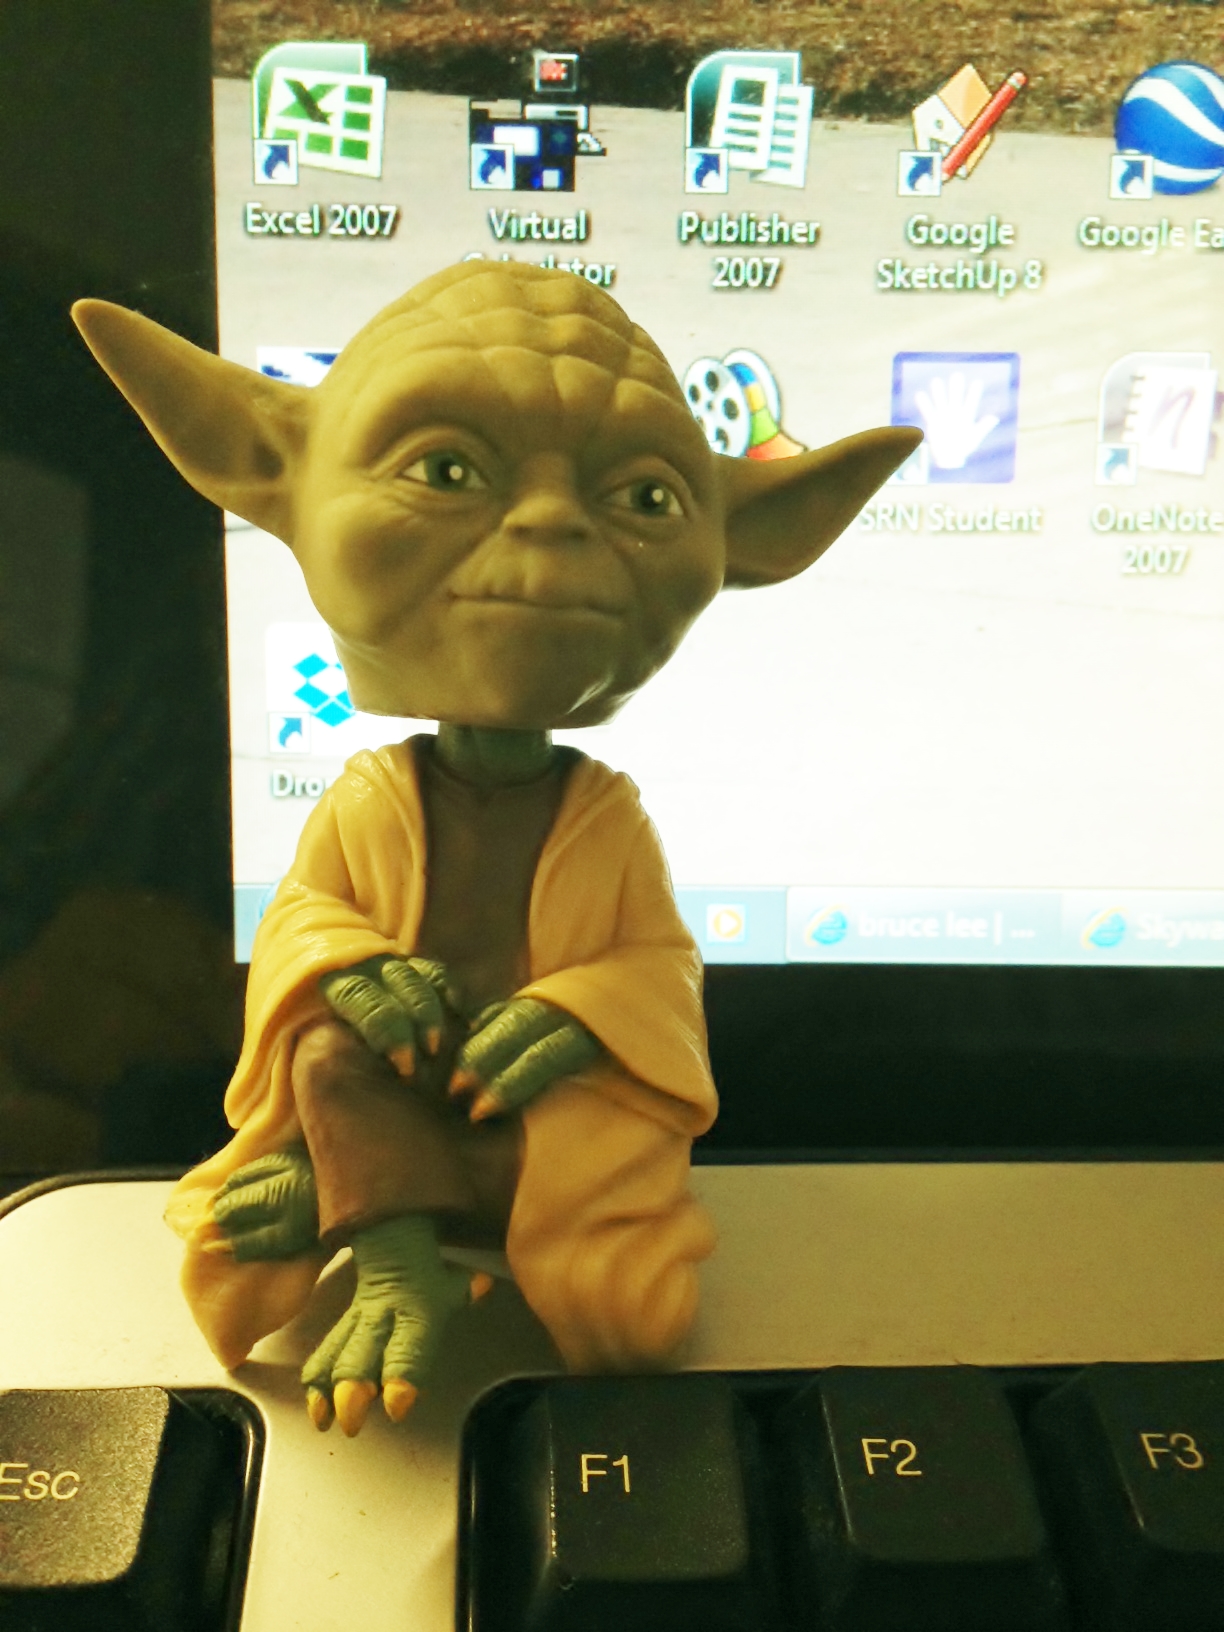 Yoda figurine on desktop